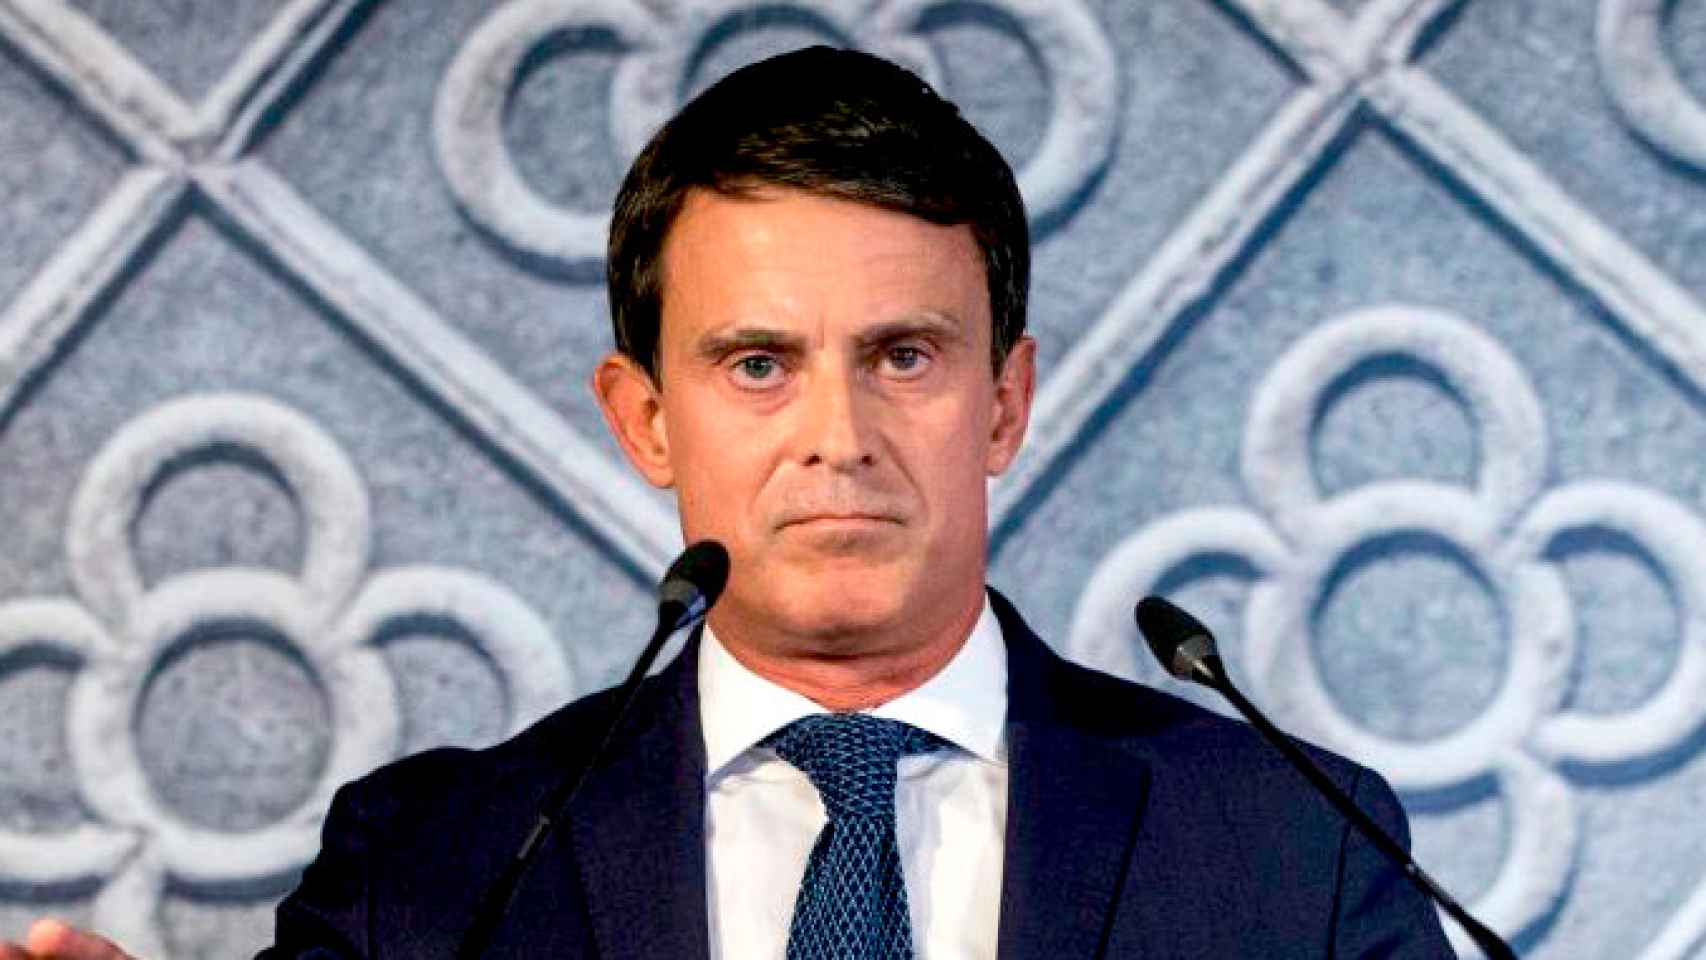 Manuel Valls, candidato a la alcaldía de Barcelona / EFE